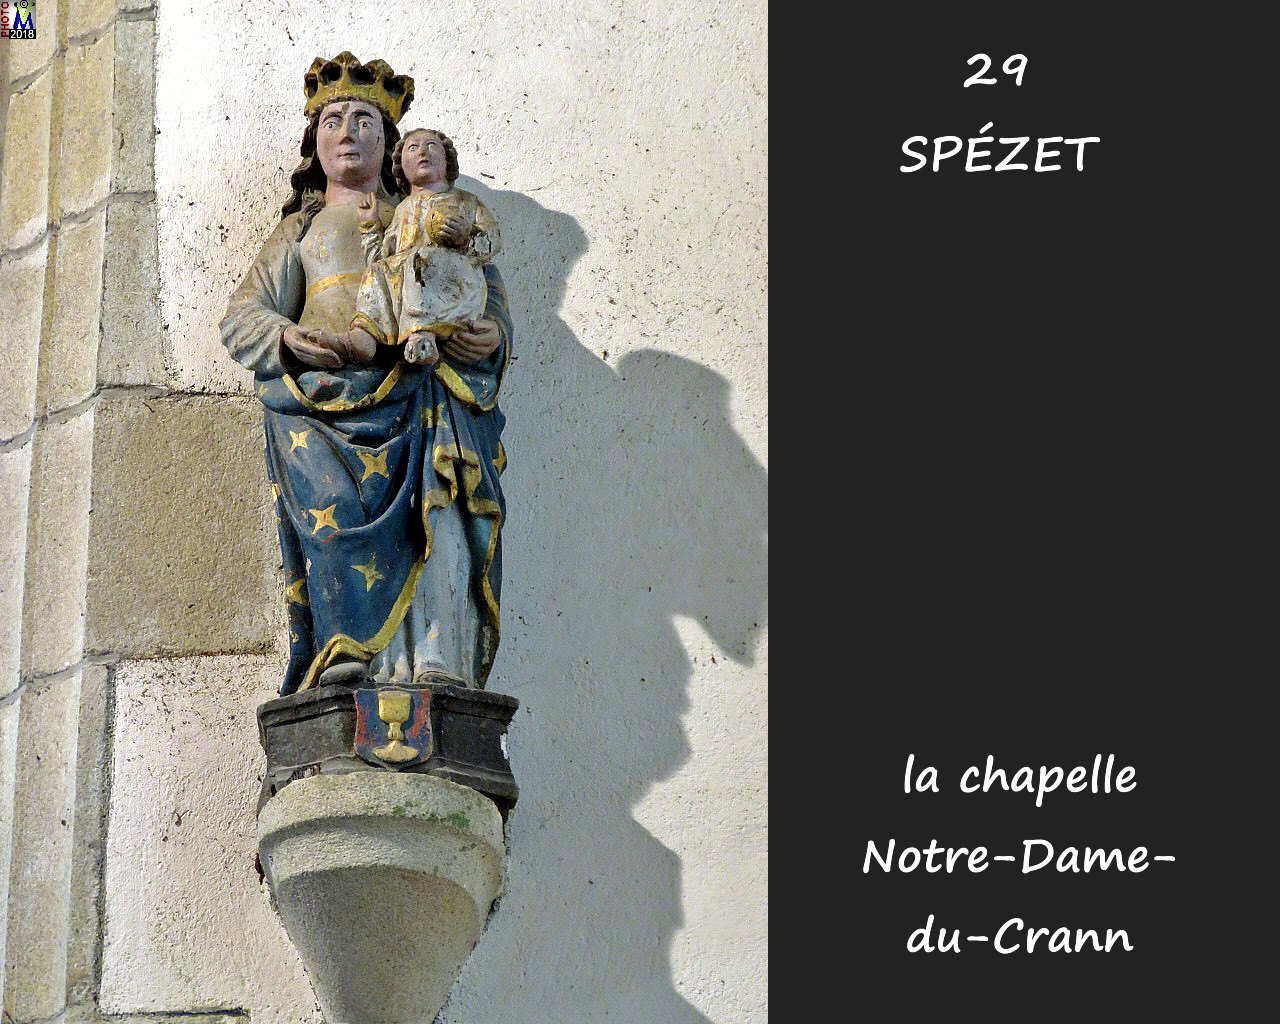 29SPEZET_chapelleNDC_264.jpg